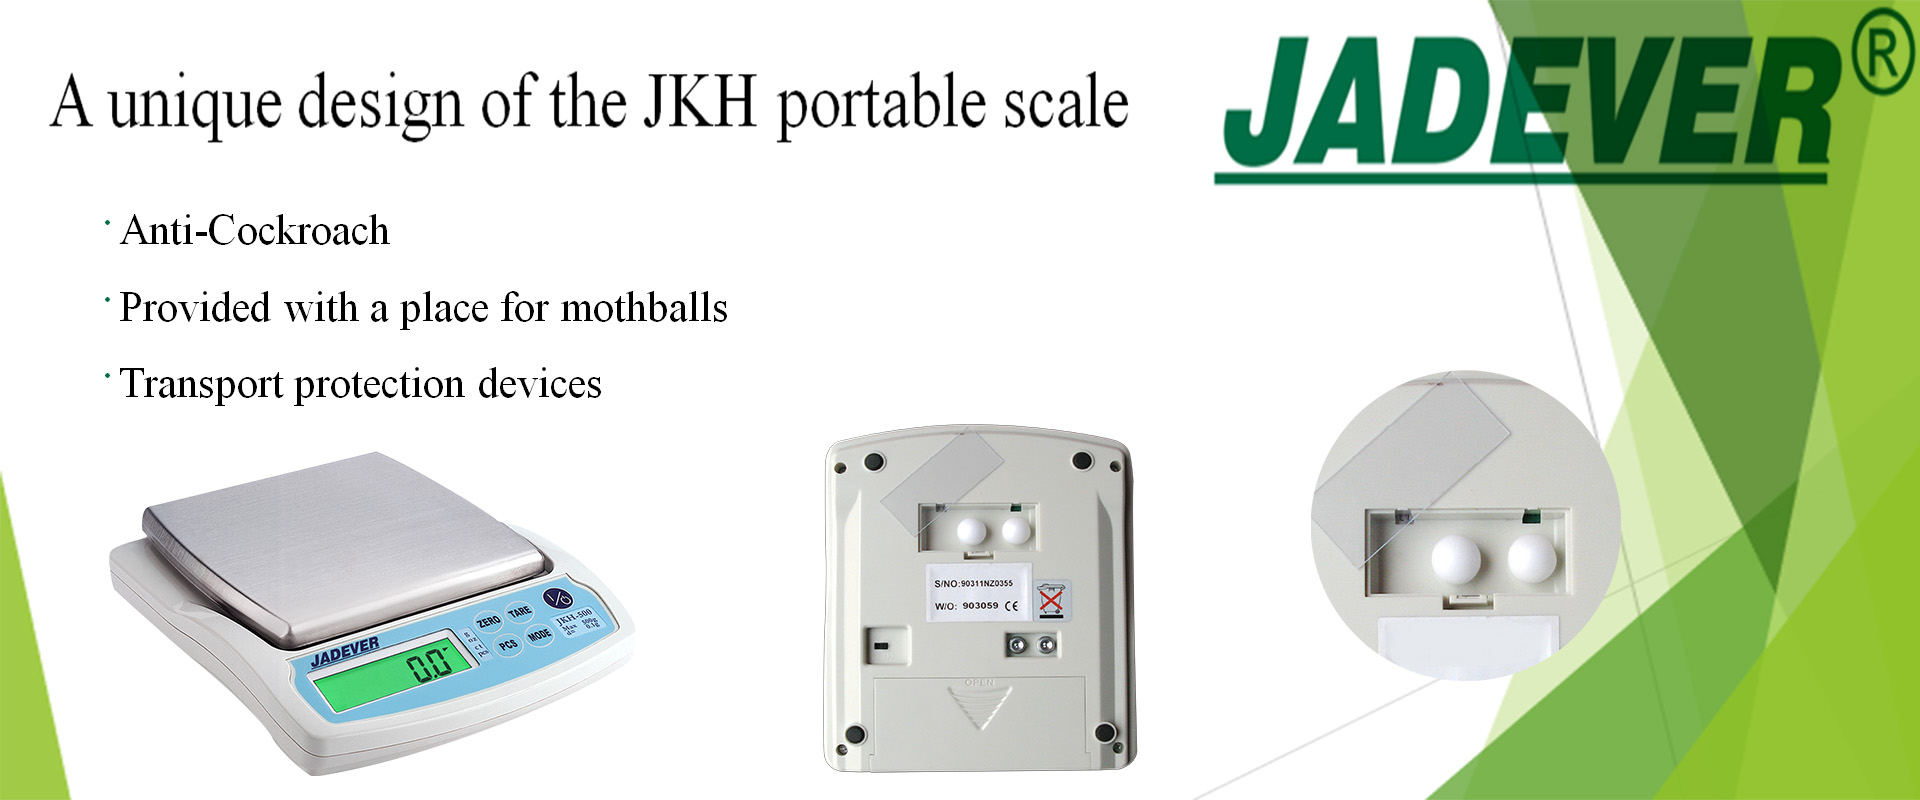 Un design unico della bilancia portatile JKH
